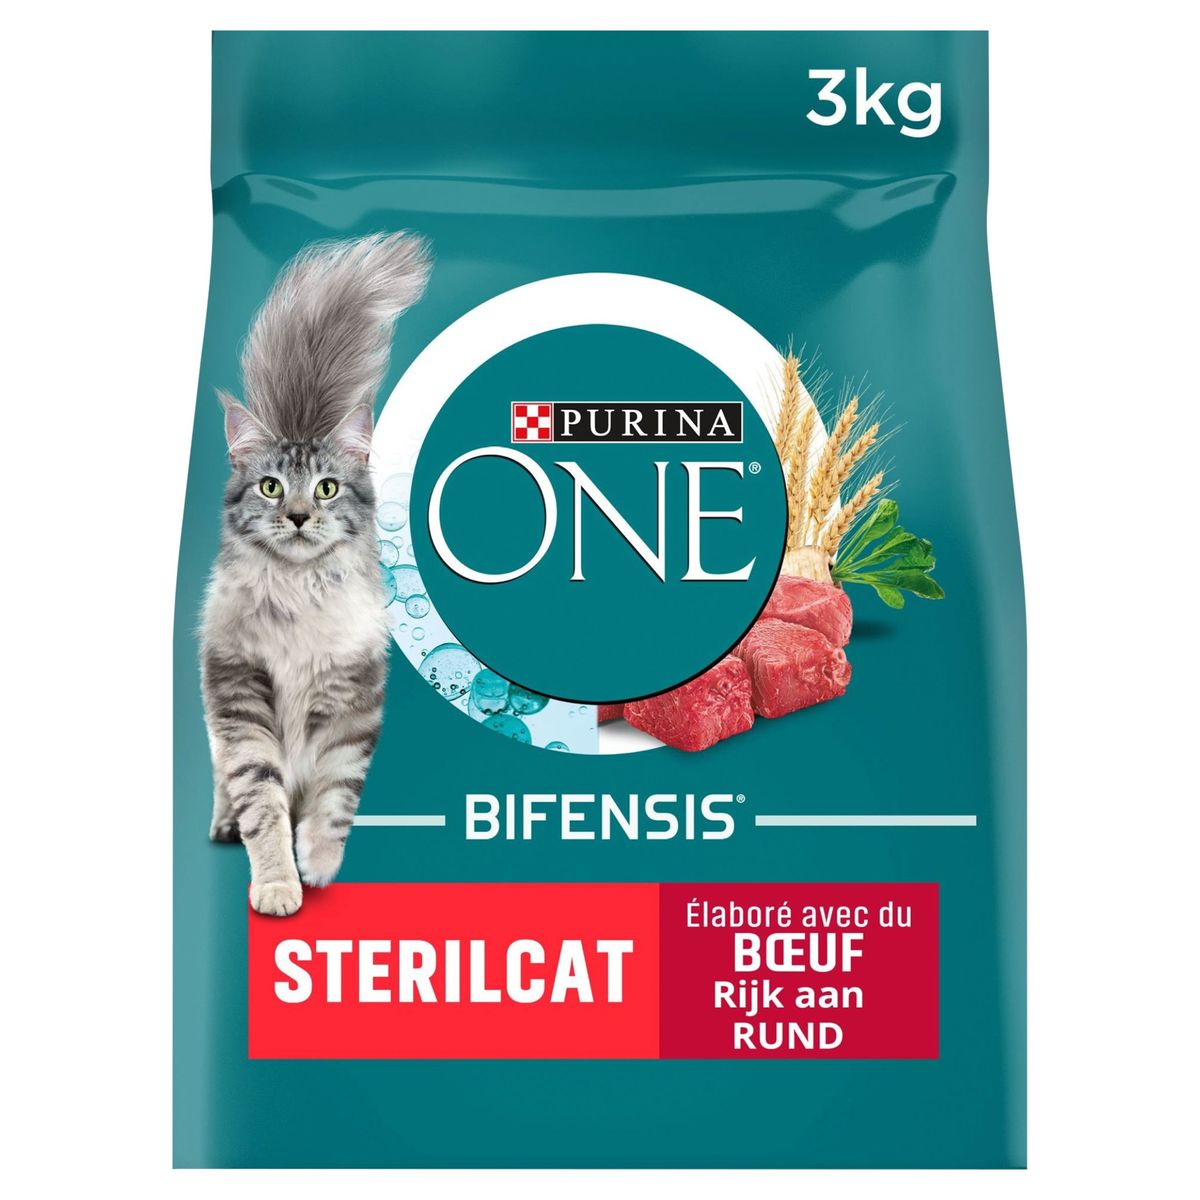 Purina ONE Kattenvoeding Bifensis Sterilcat Rund 3kg